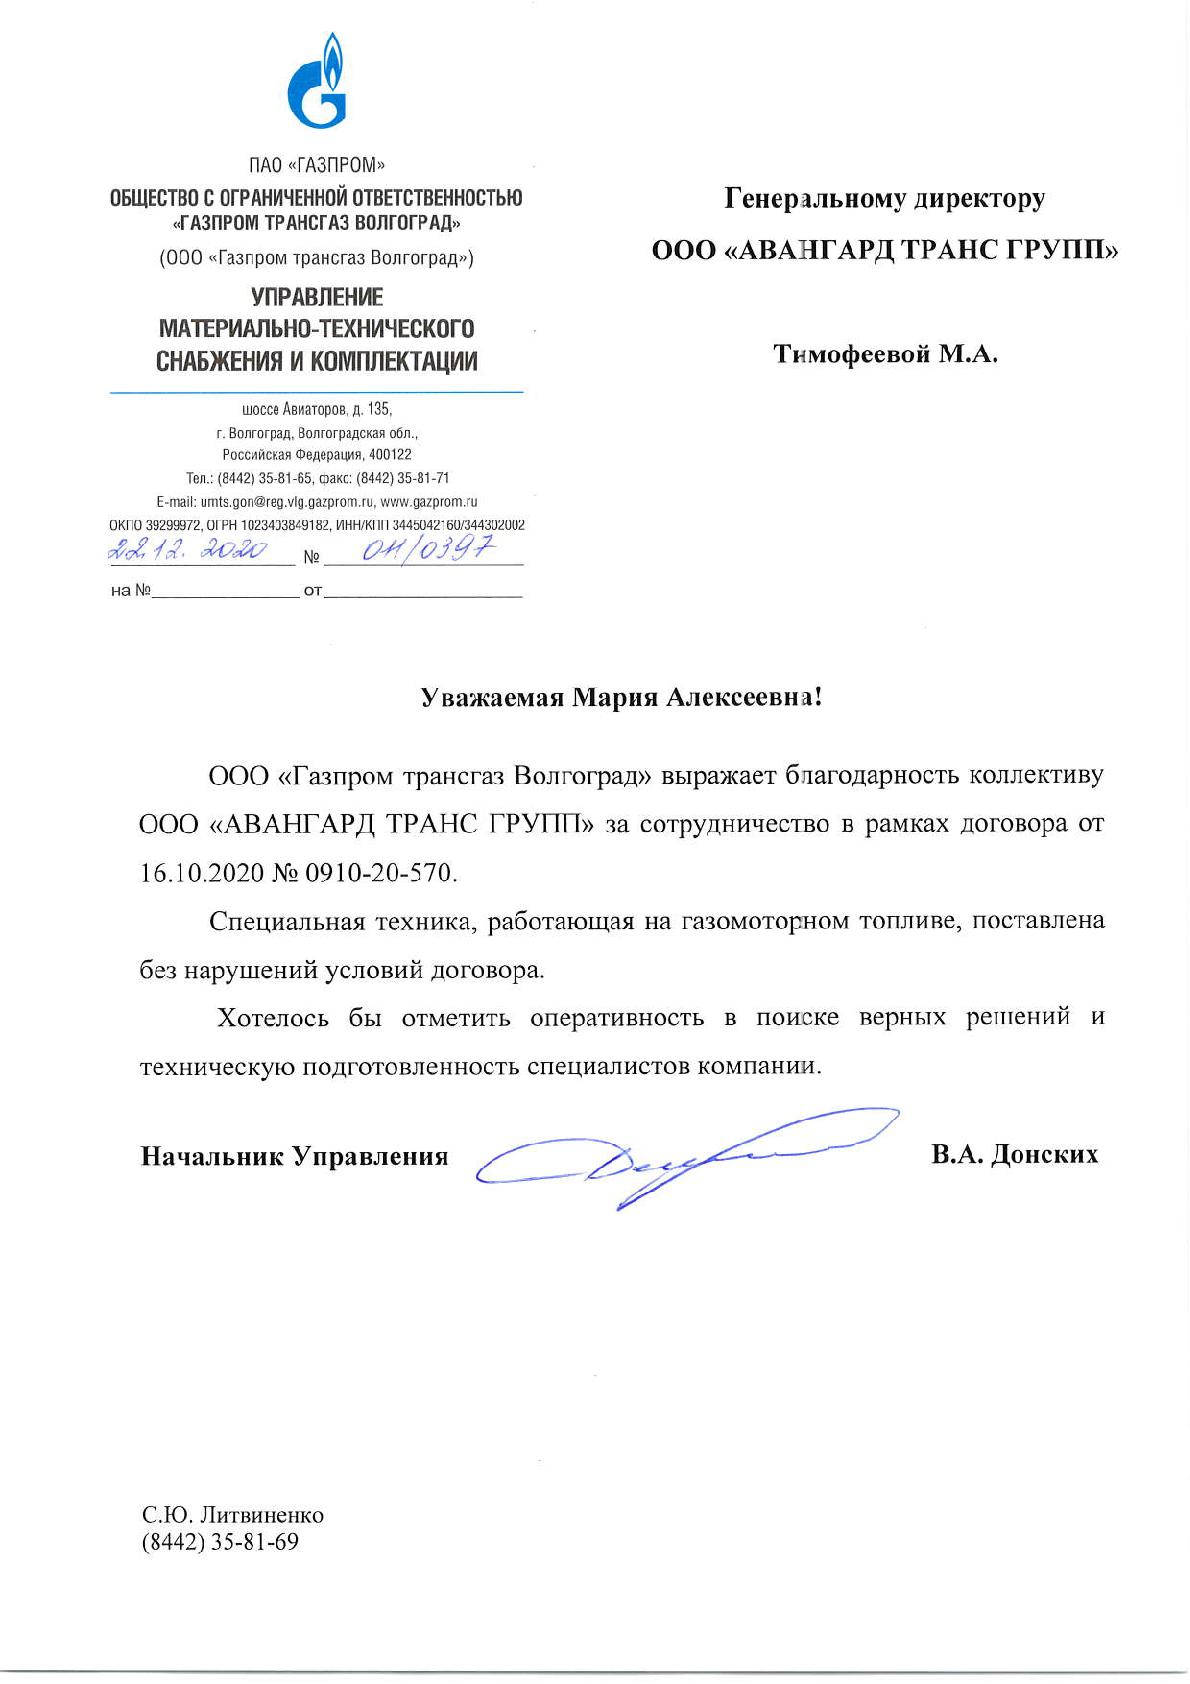 Отзыв к Договору № 0910-20-570 от 16.10.2020г. от Газпром трансгаз Волгоград